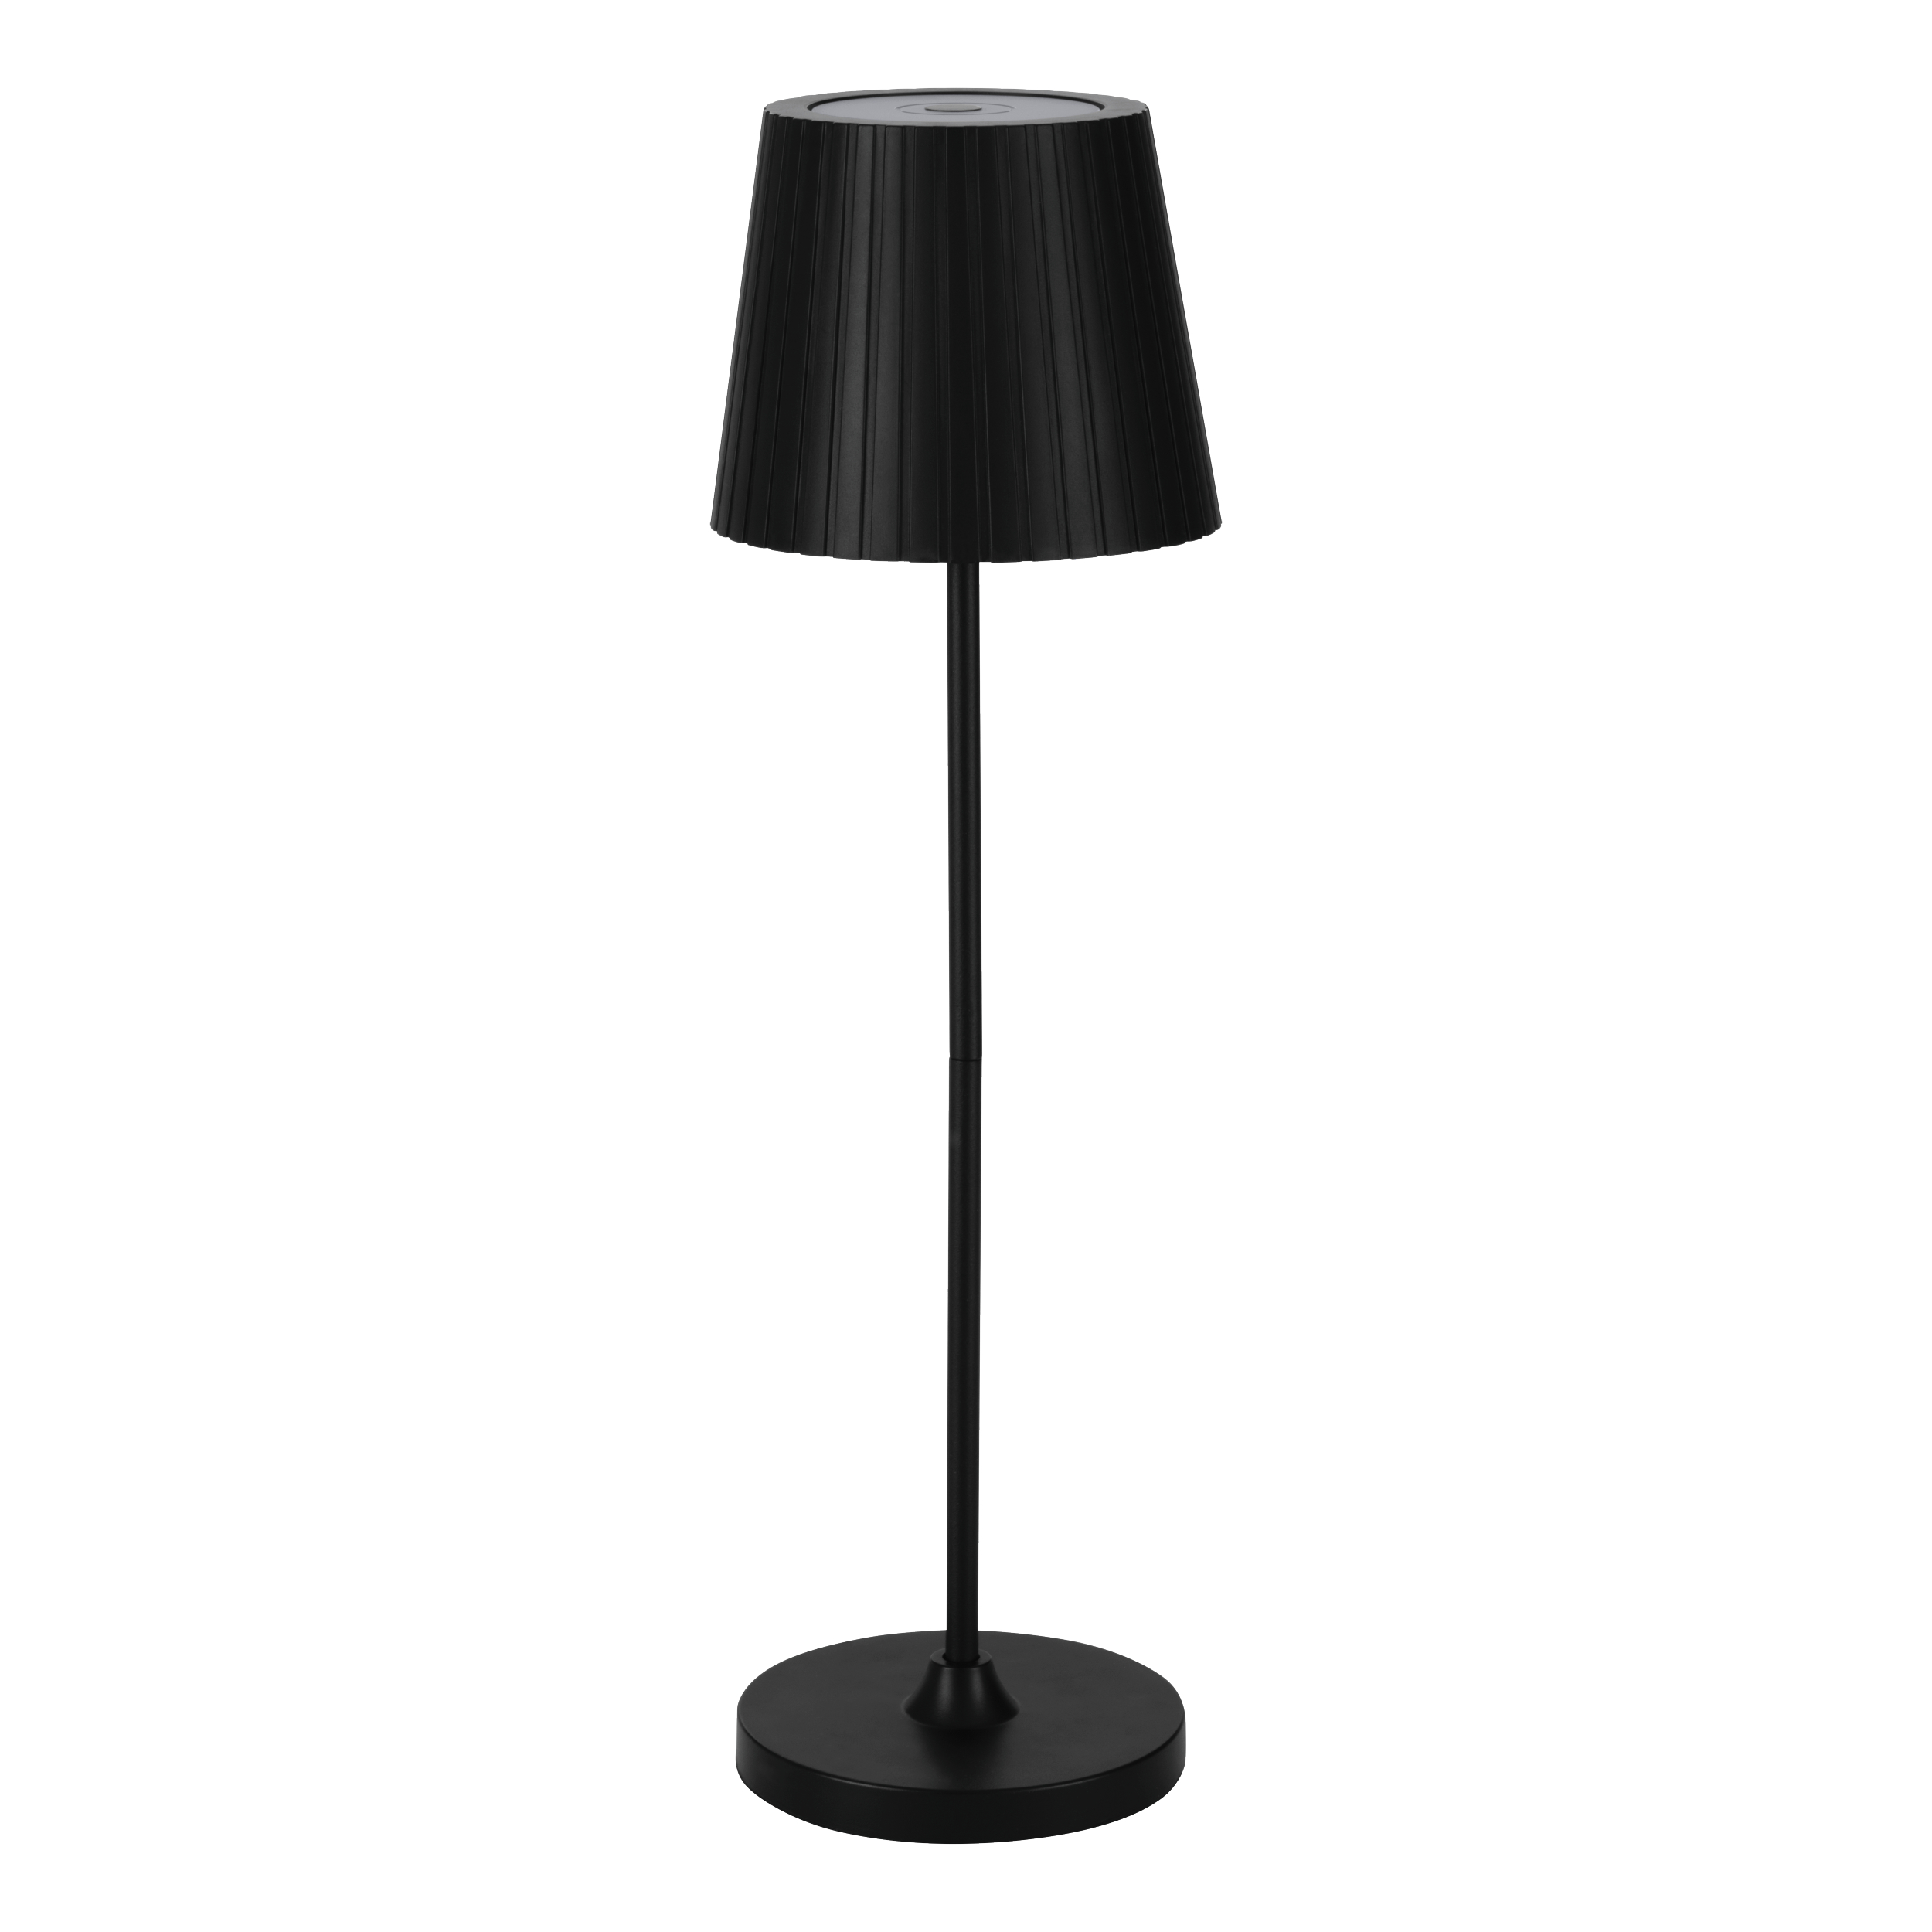 EGLO Lampe de table Cabozo 75794 noir, batterie